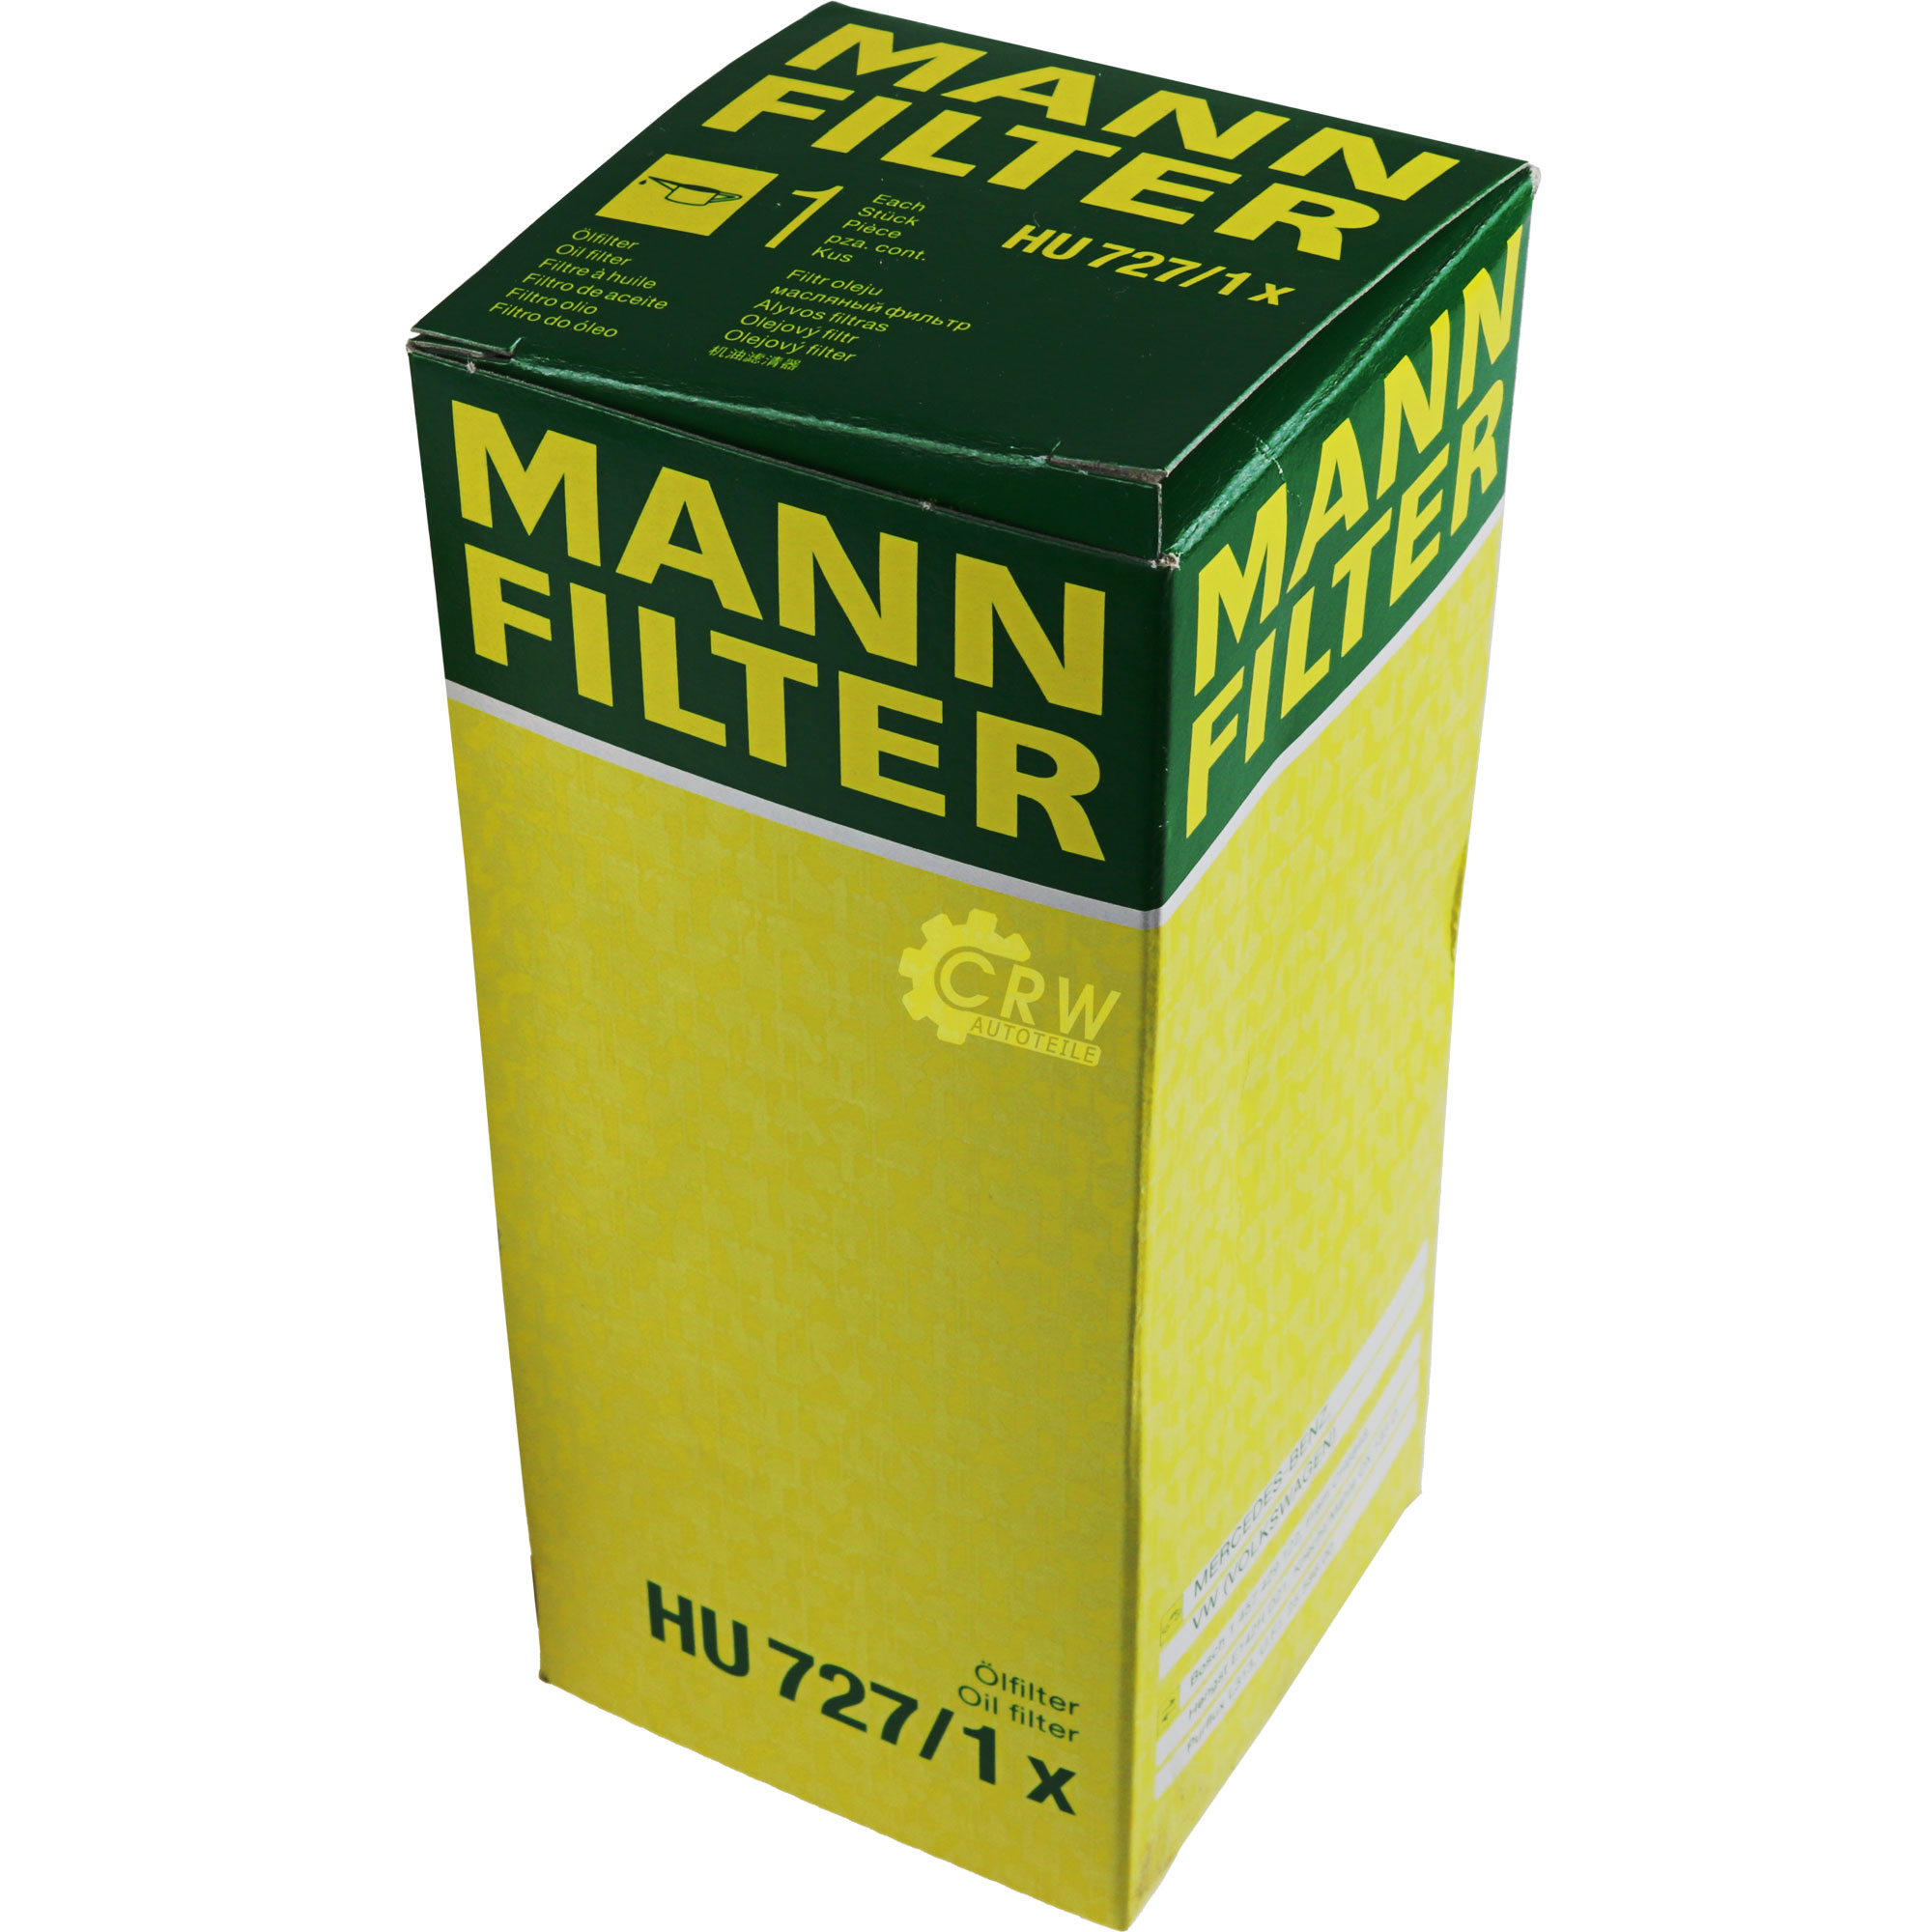 MANN-FILTER Ölfilter HU 727/1 x Oil Filter